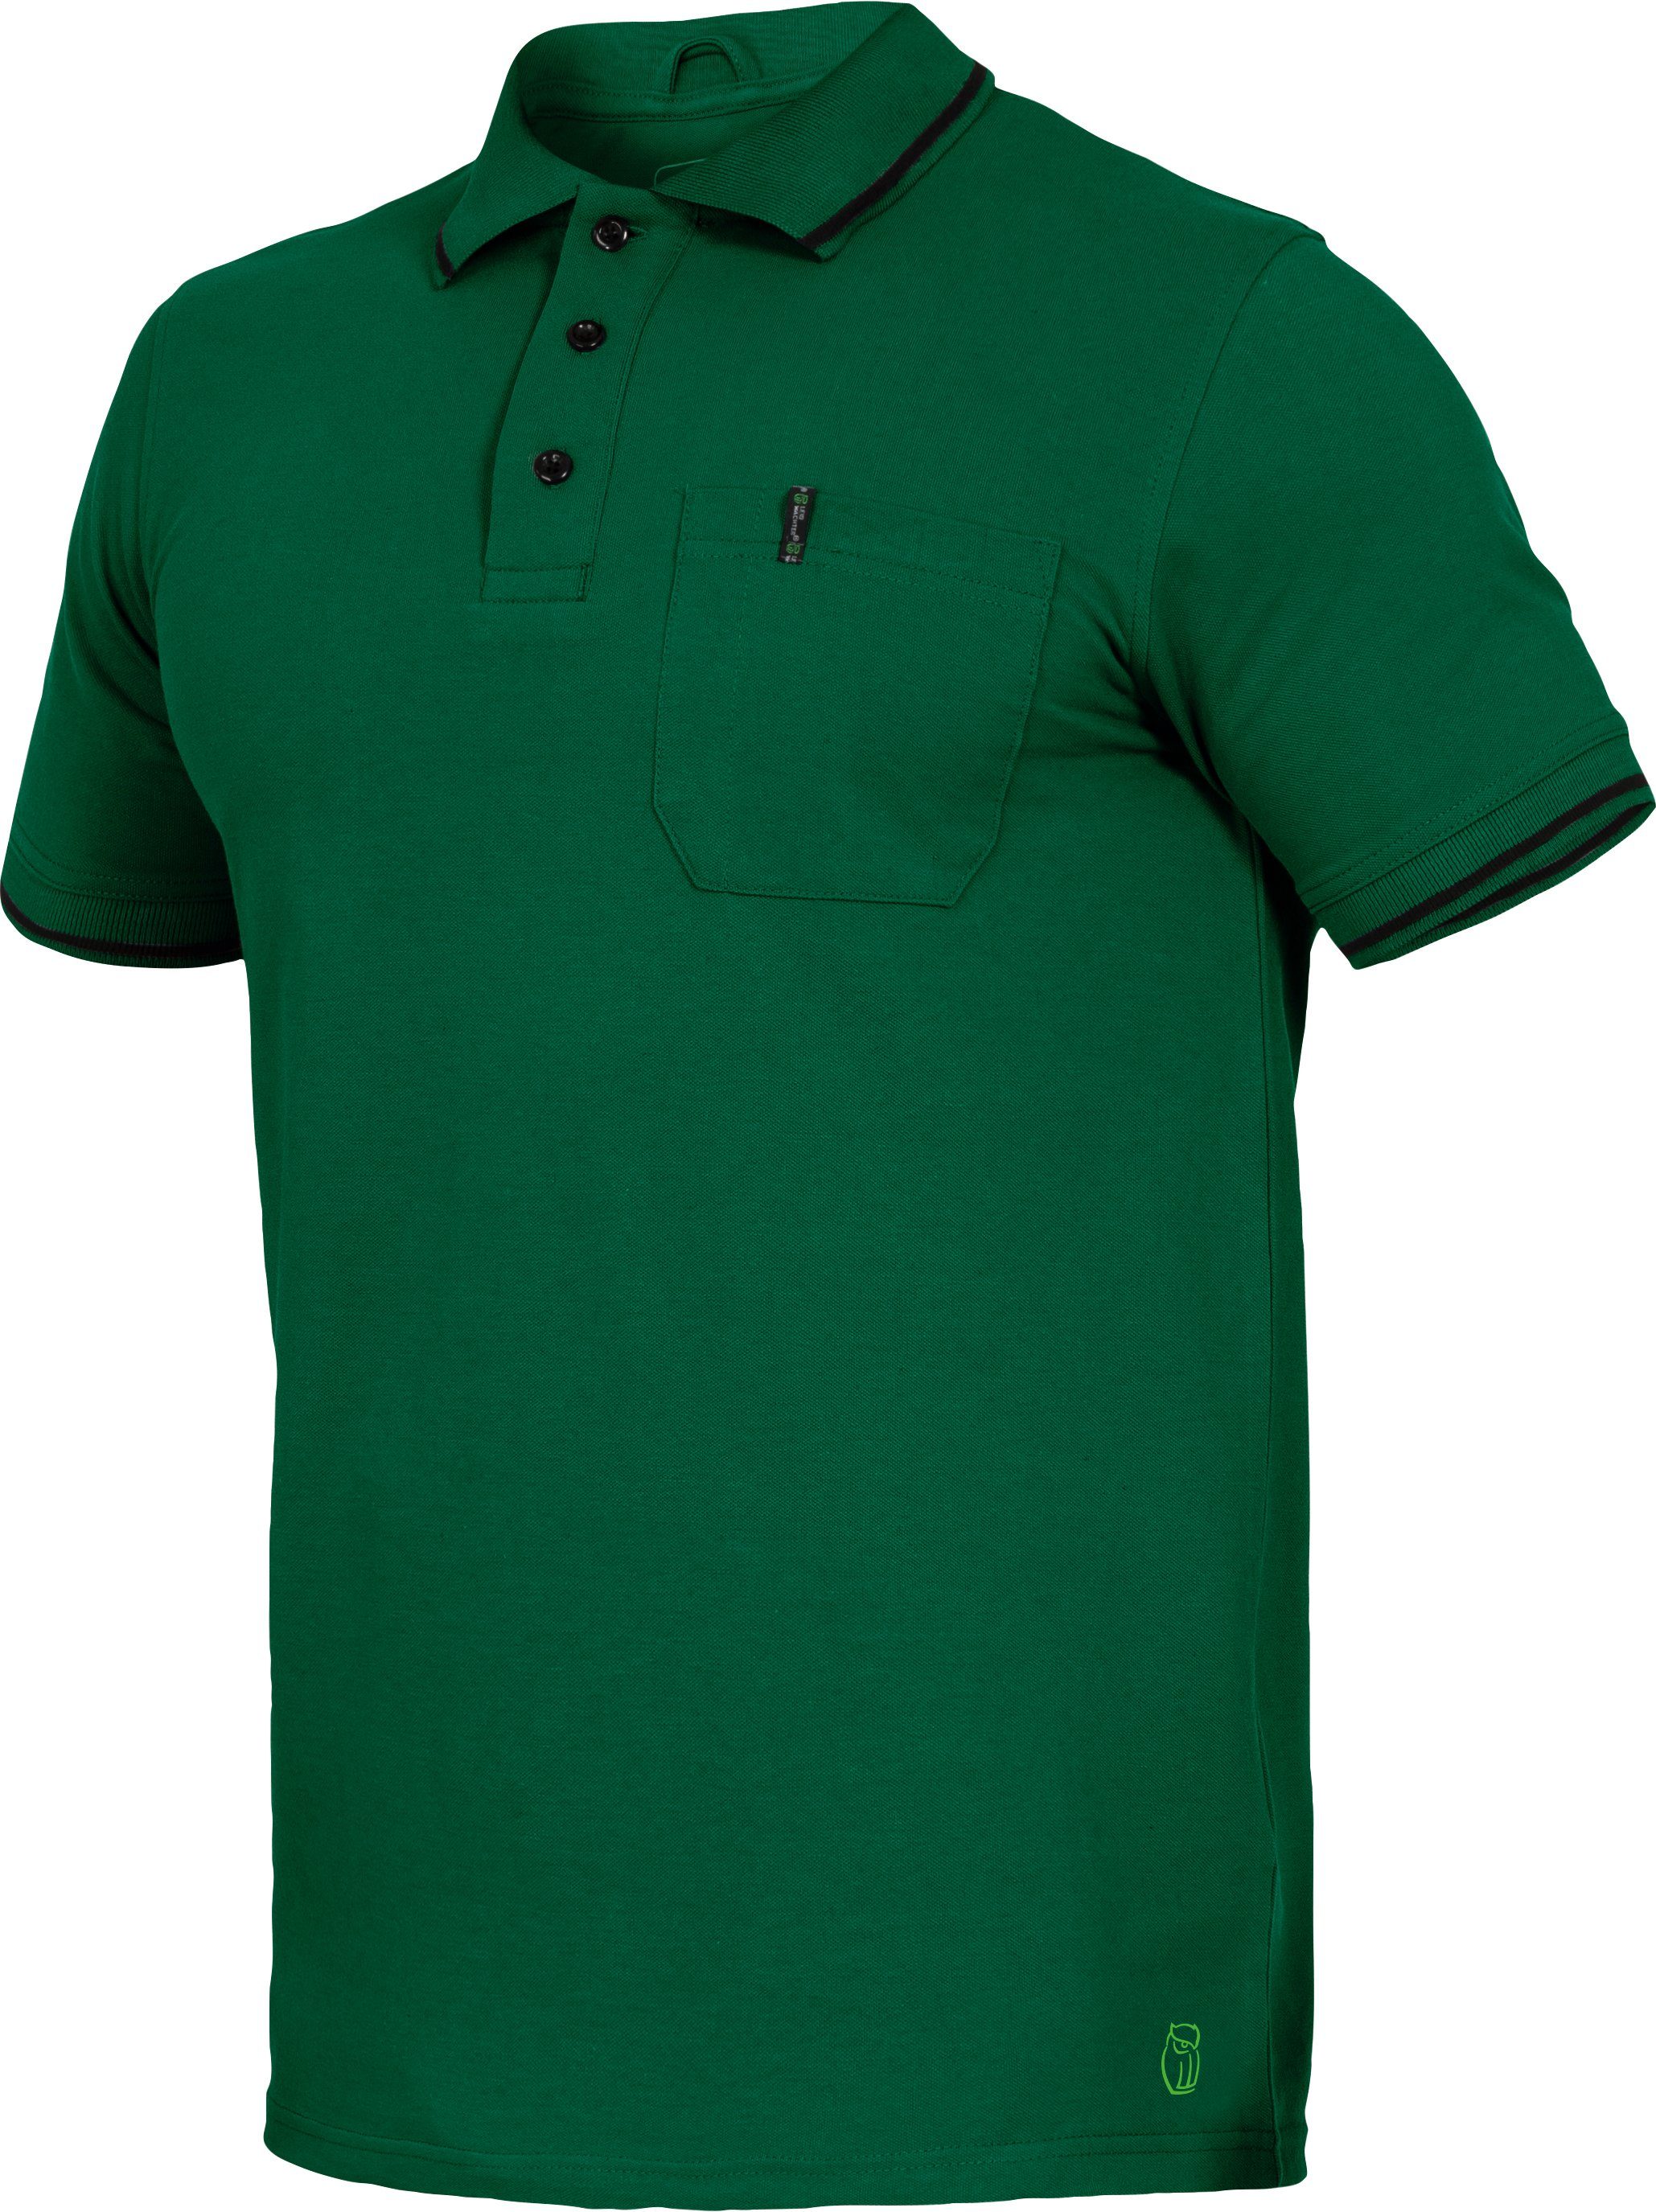 grün Leibwächter Poloshirt Flex-Line Herren Poloshirt